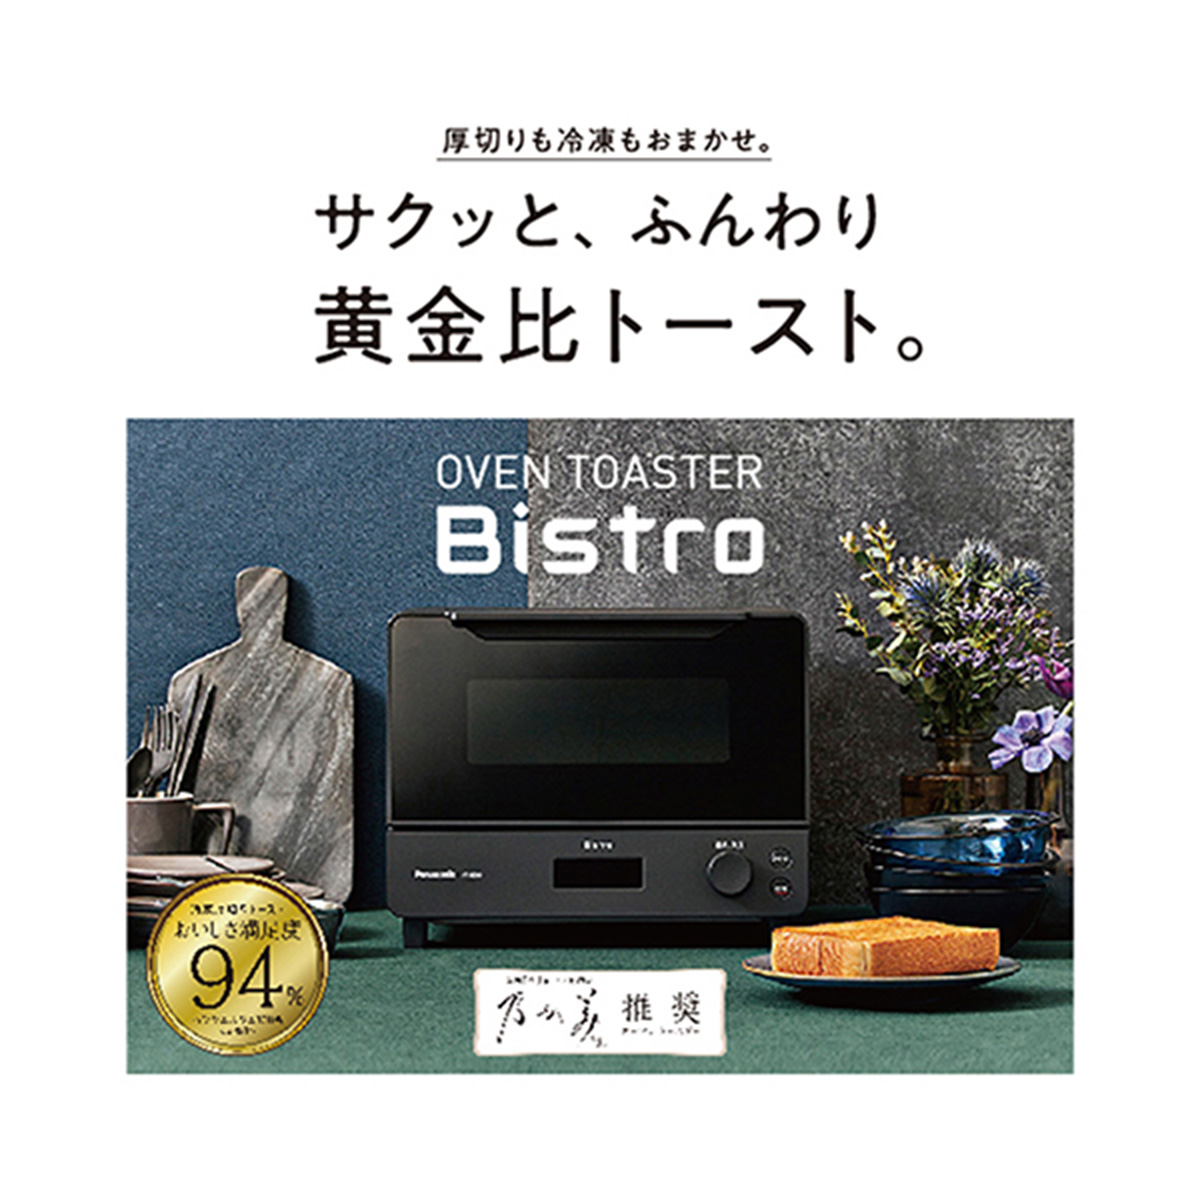 パナソニック オーブントースター Bistro(ビストロ) 8段階温度調節 オーブン調理 焼き芋 食パン２枚 ブラック